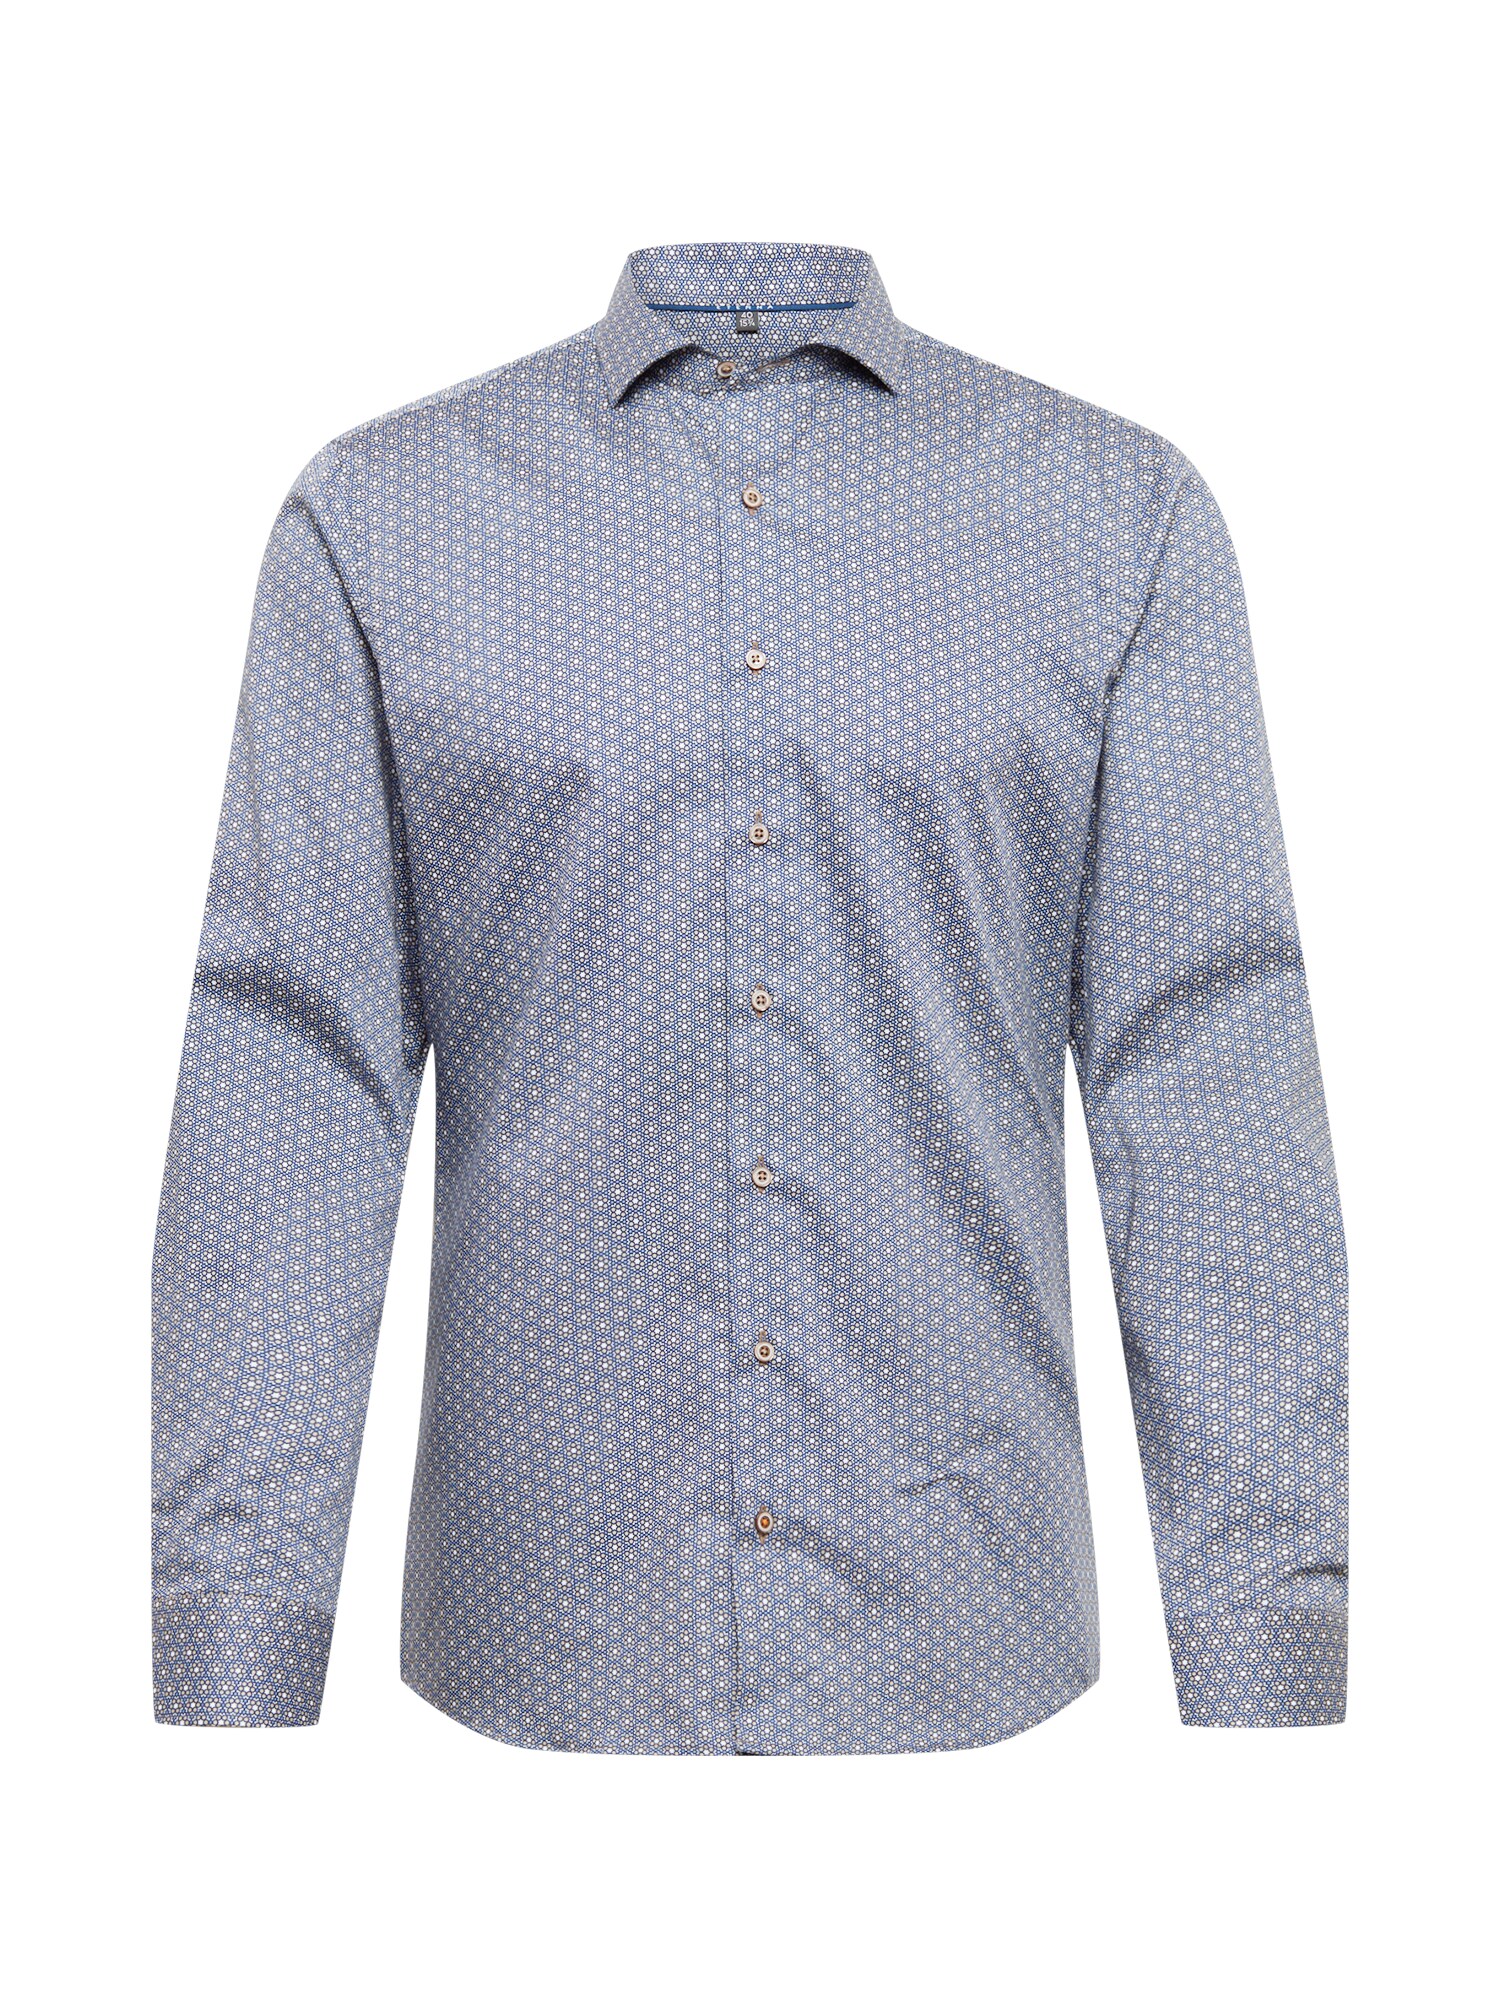 ETERNA Dalykinio stiliaus marškiniai zomšos spalva / dangaus žydra / pastelinė mėlyna / balta